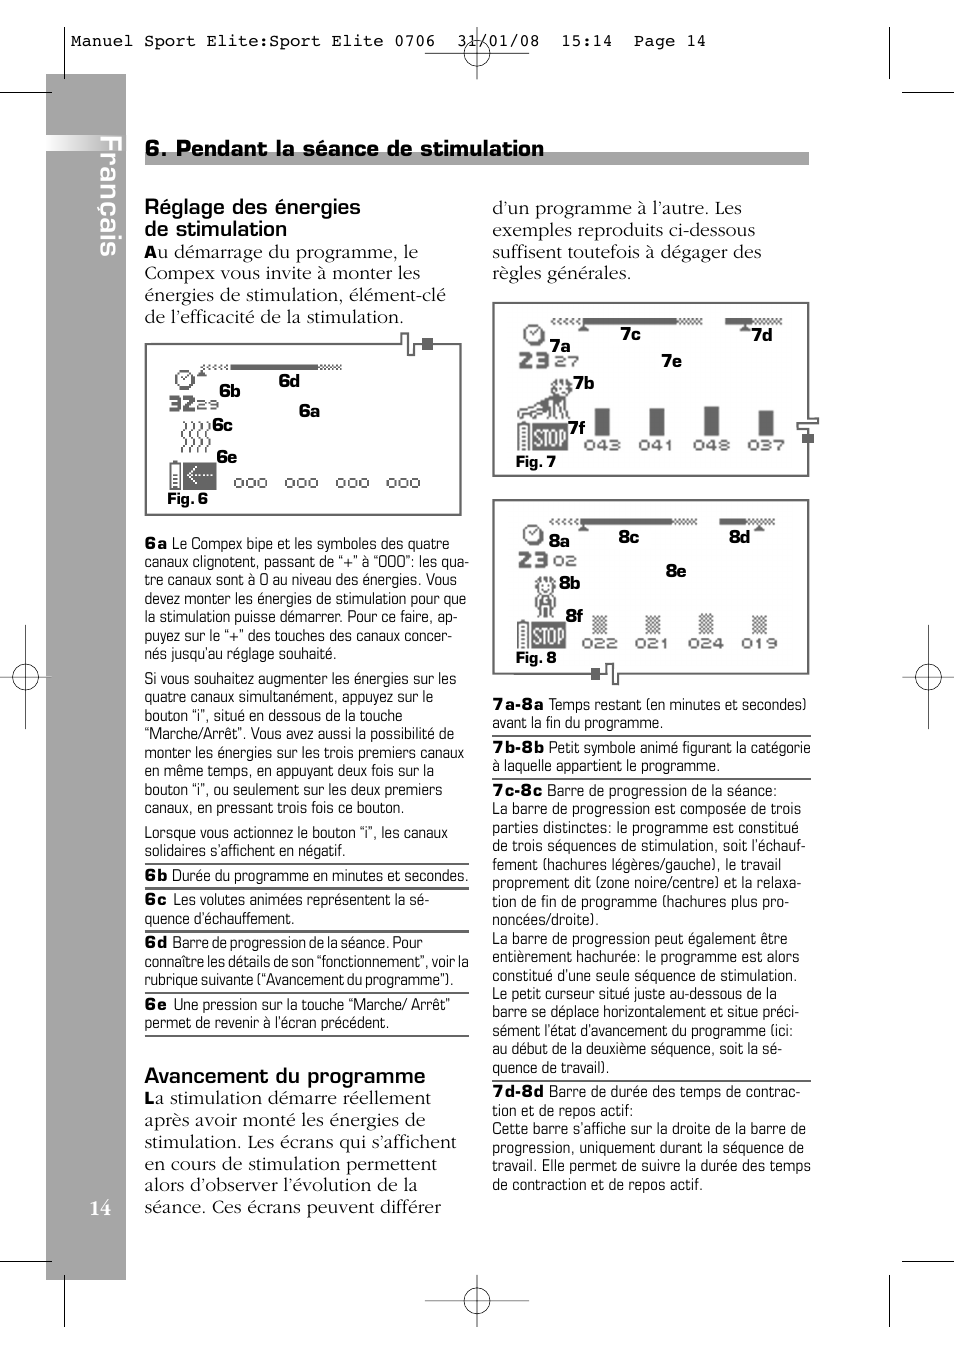 Français, Pendant la séance de stimulation | Compex Sport Elite User Manual  | Page 14 / 320 | Original mode